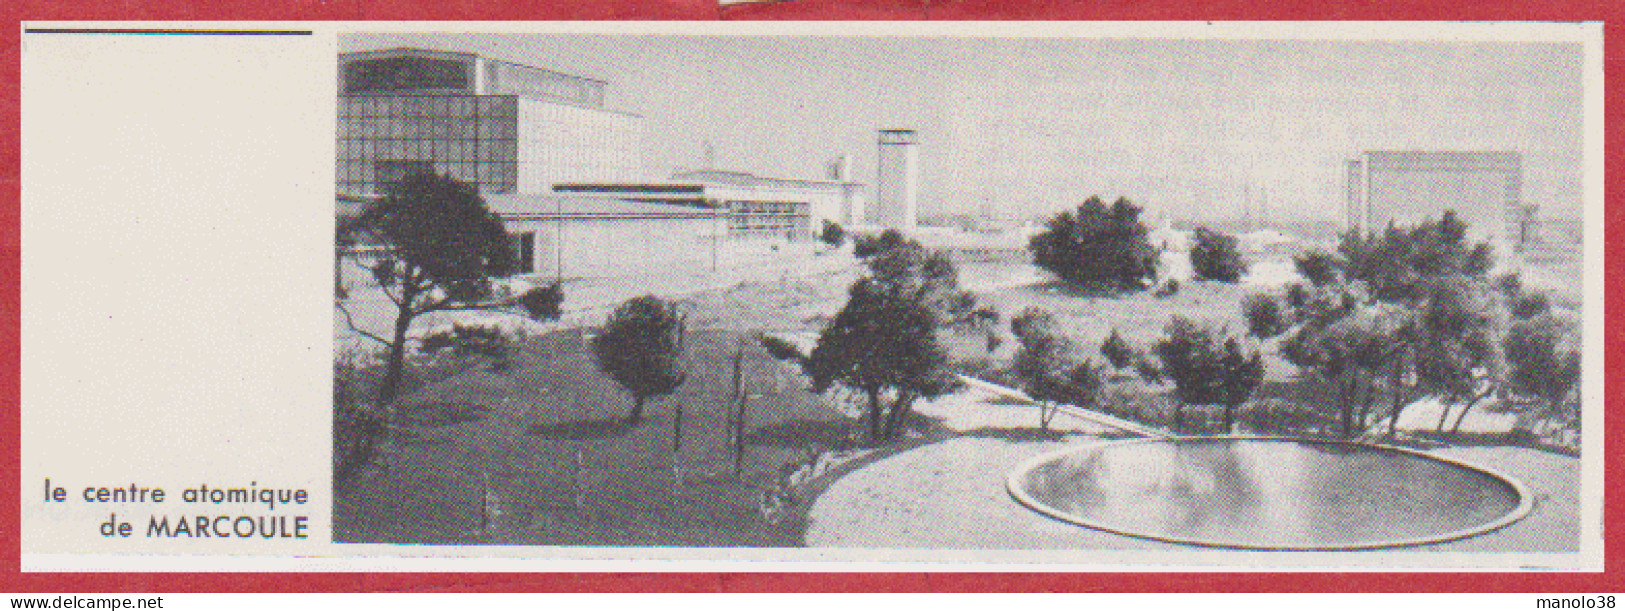 Le Centre Atomique De Marcoule. Gard (30). Larousse 1960. - Documenti Storici